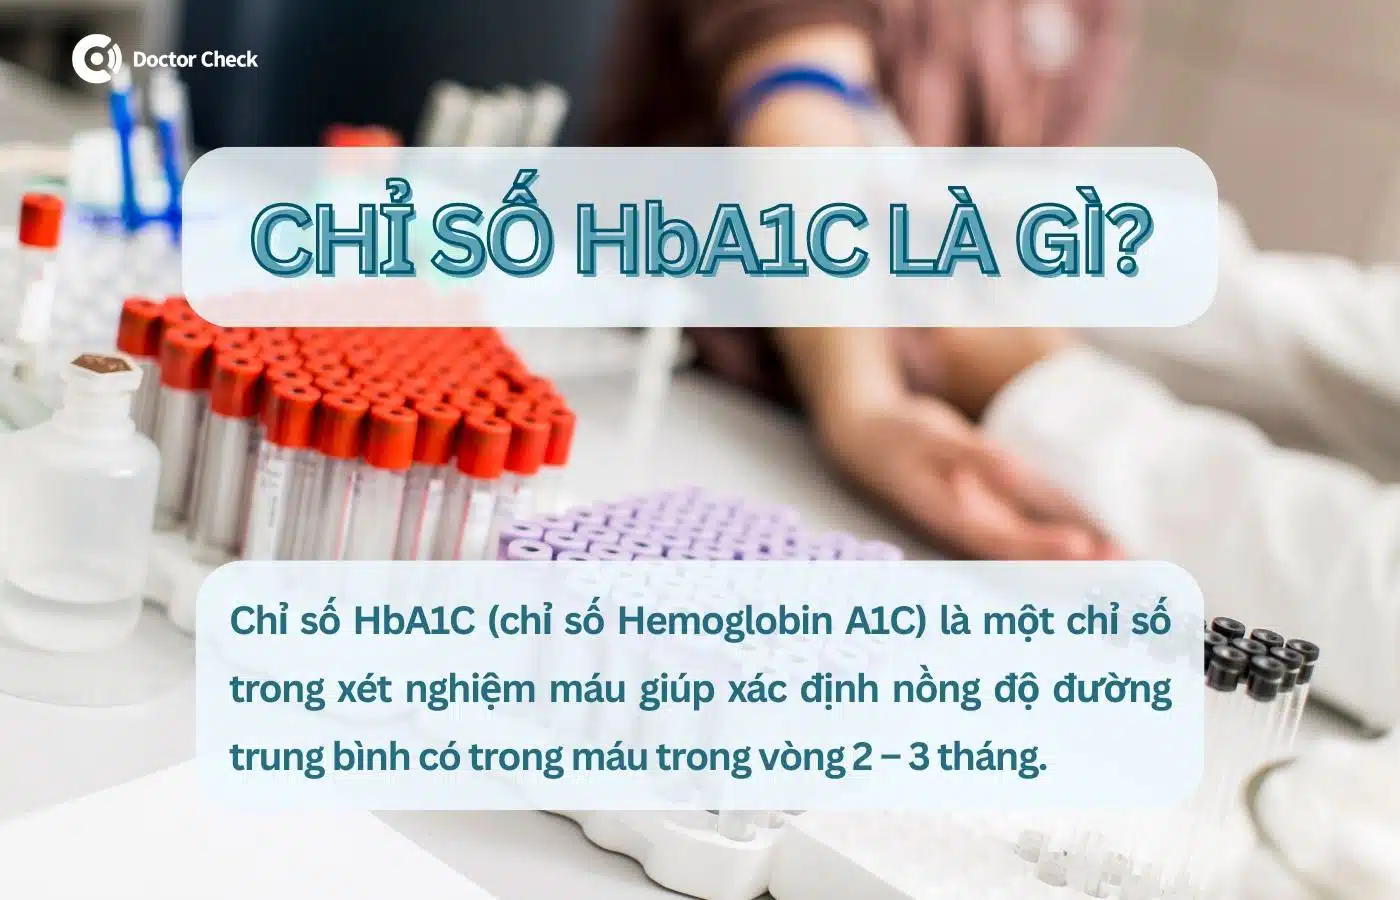 Chỉ số HbA1C là gì?